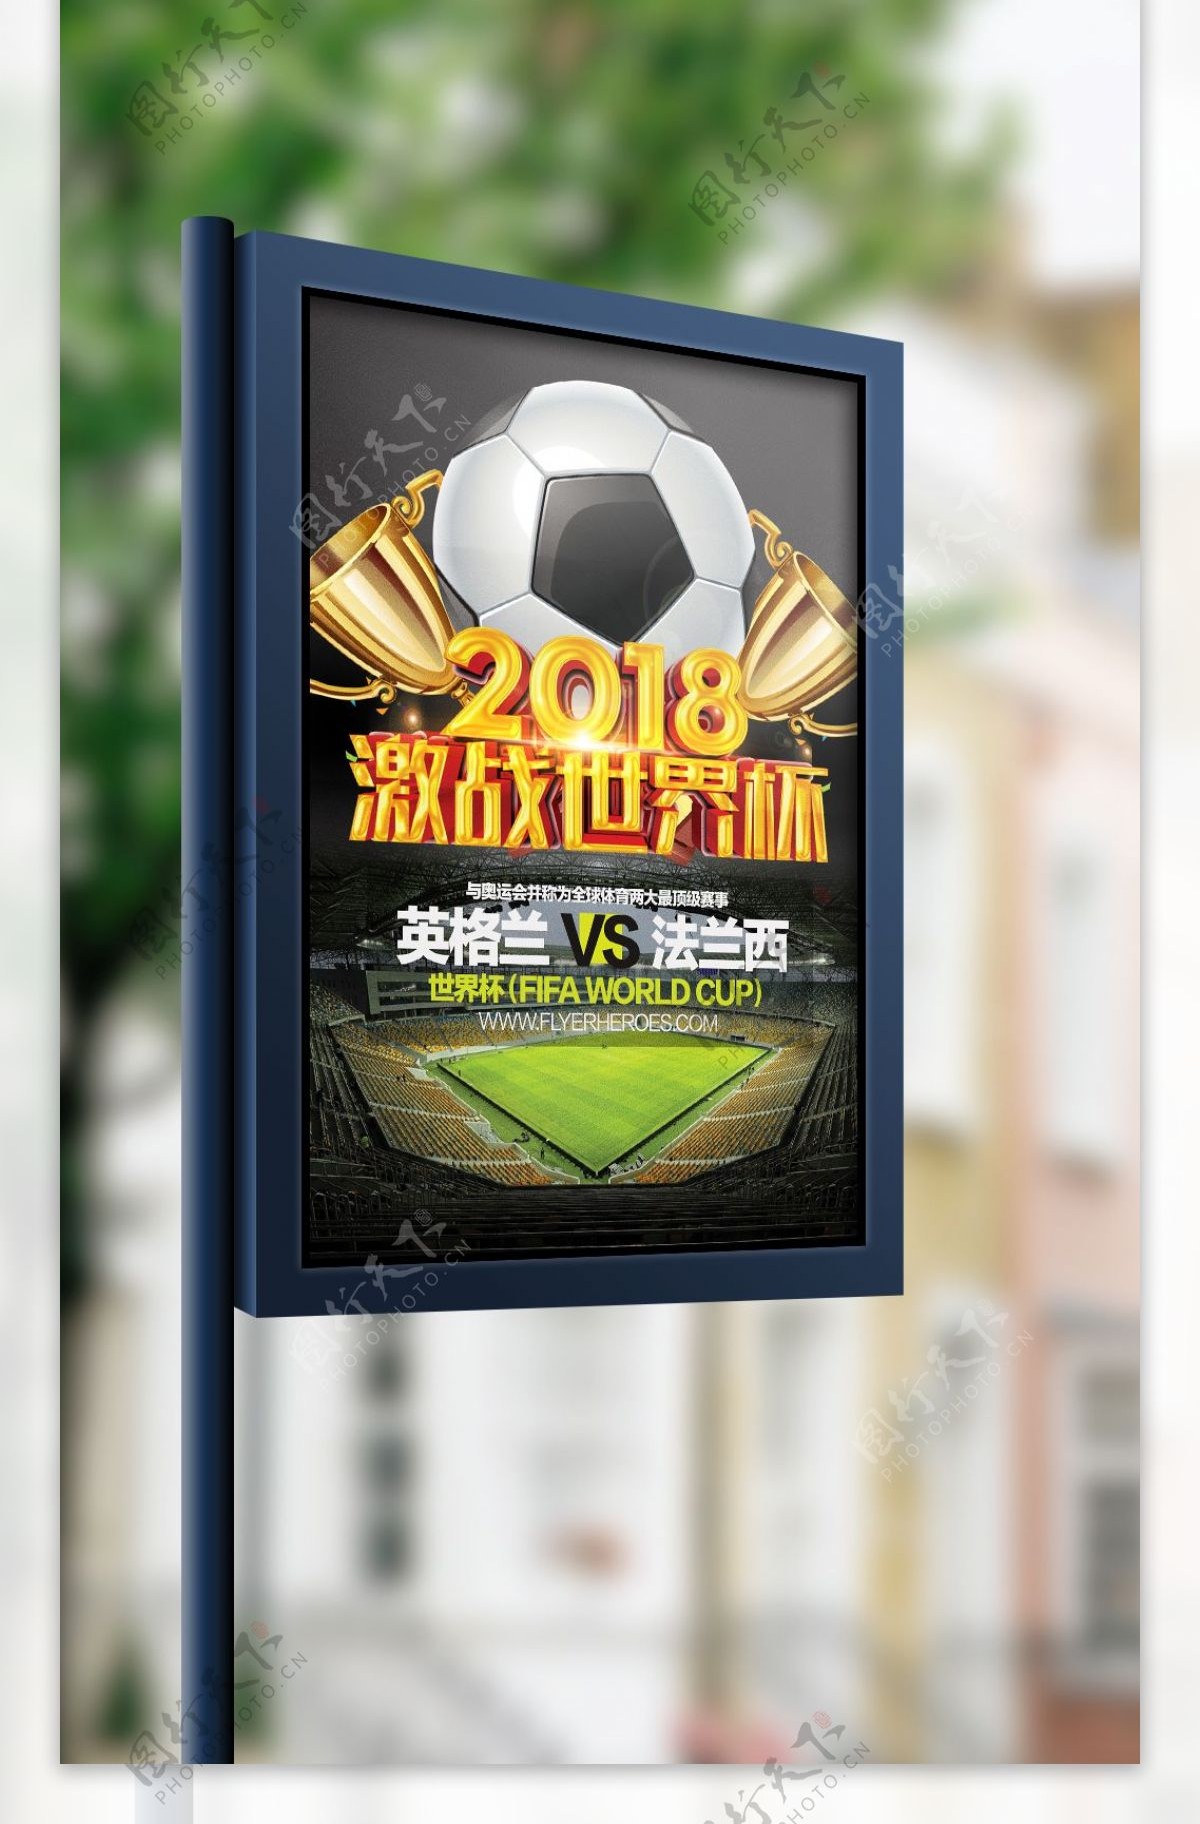 酷炫黑金2018世界杯宣传海报设计模板